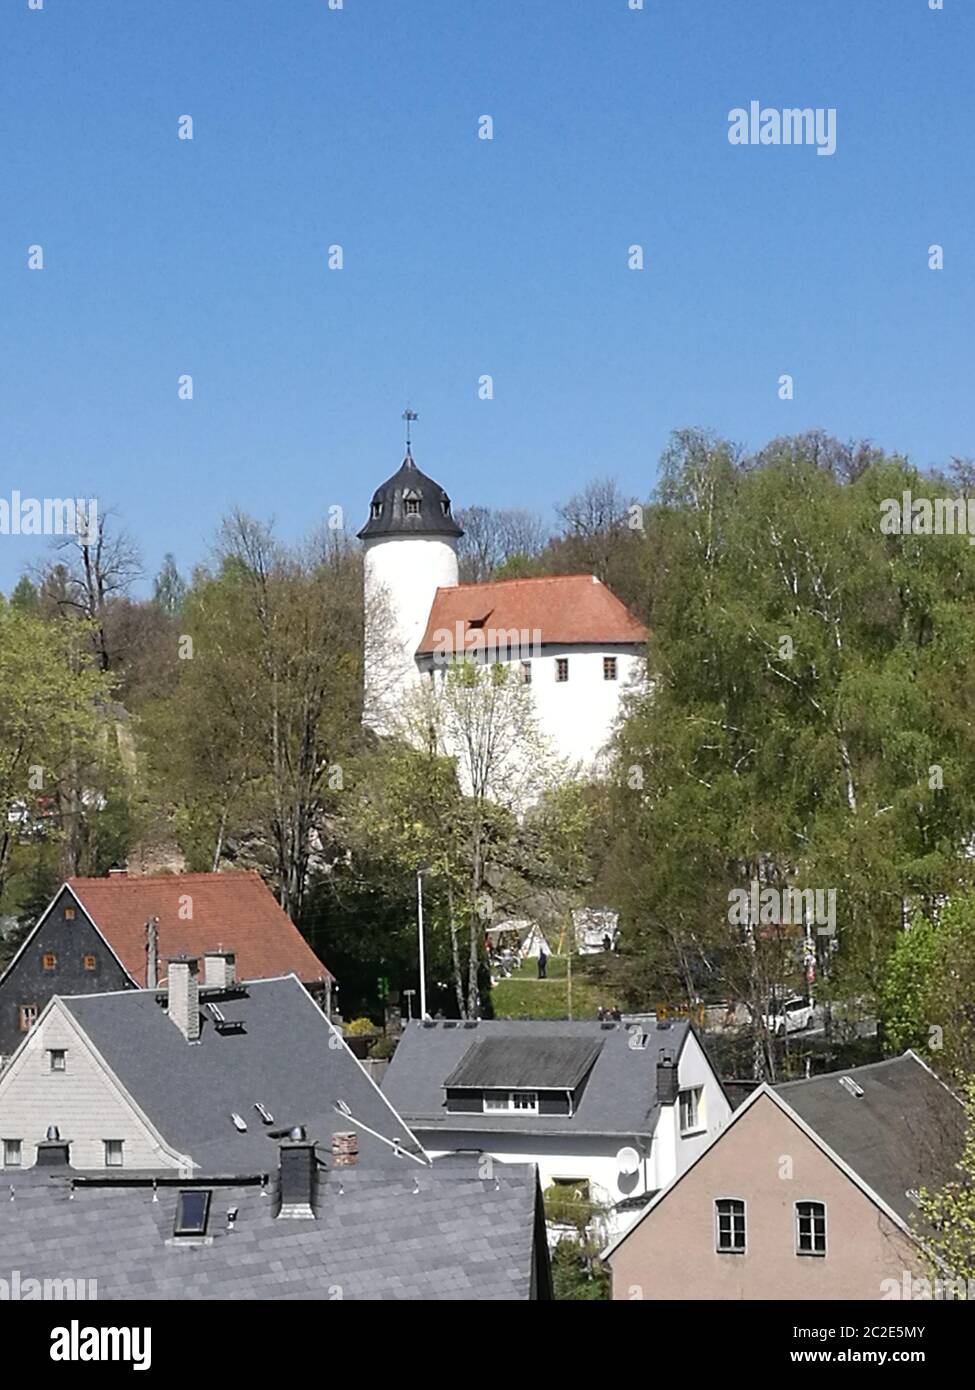 Blick über Hausdächer zur Burg Rabenstein, mittelalterliche Burganlage in Chemnitz in Sachsen, Deutschland, weiße Burganlage mit rotem Dach und einem Stock Photo